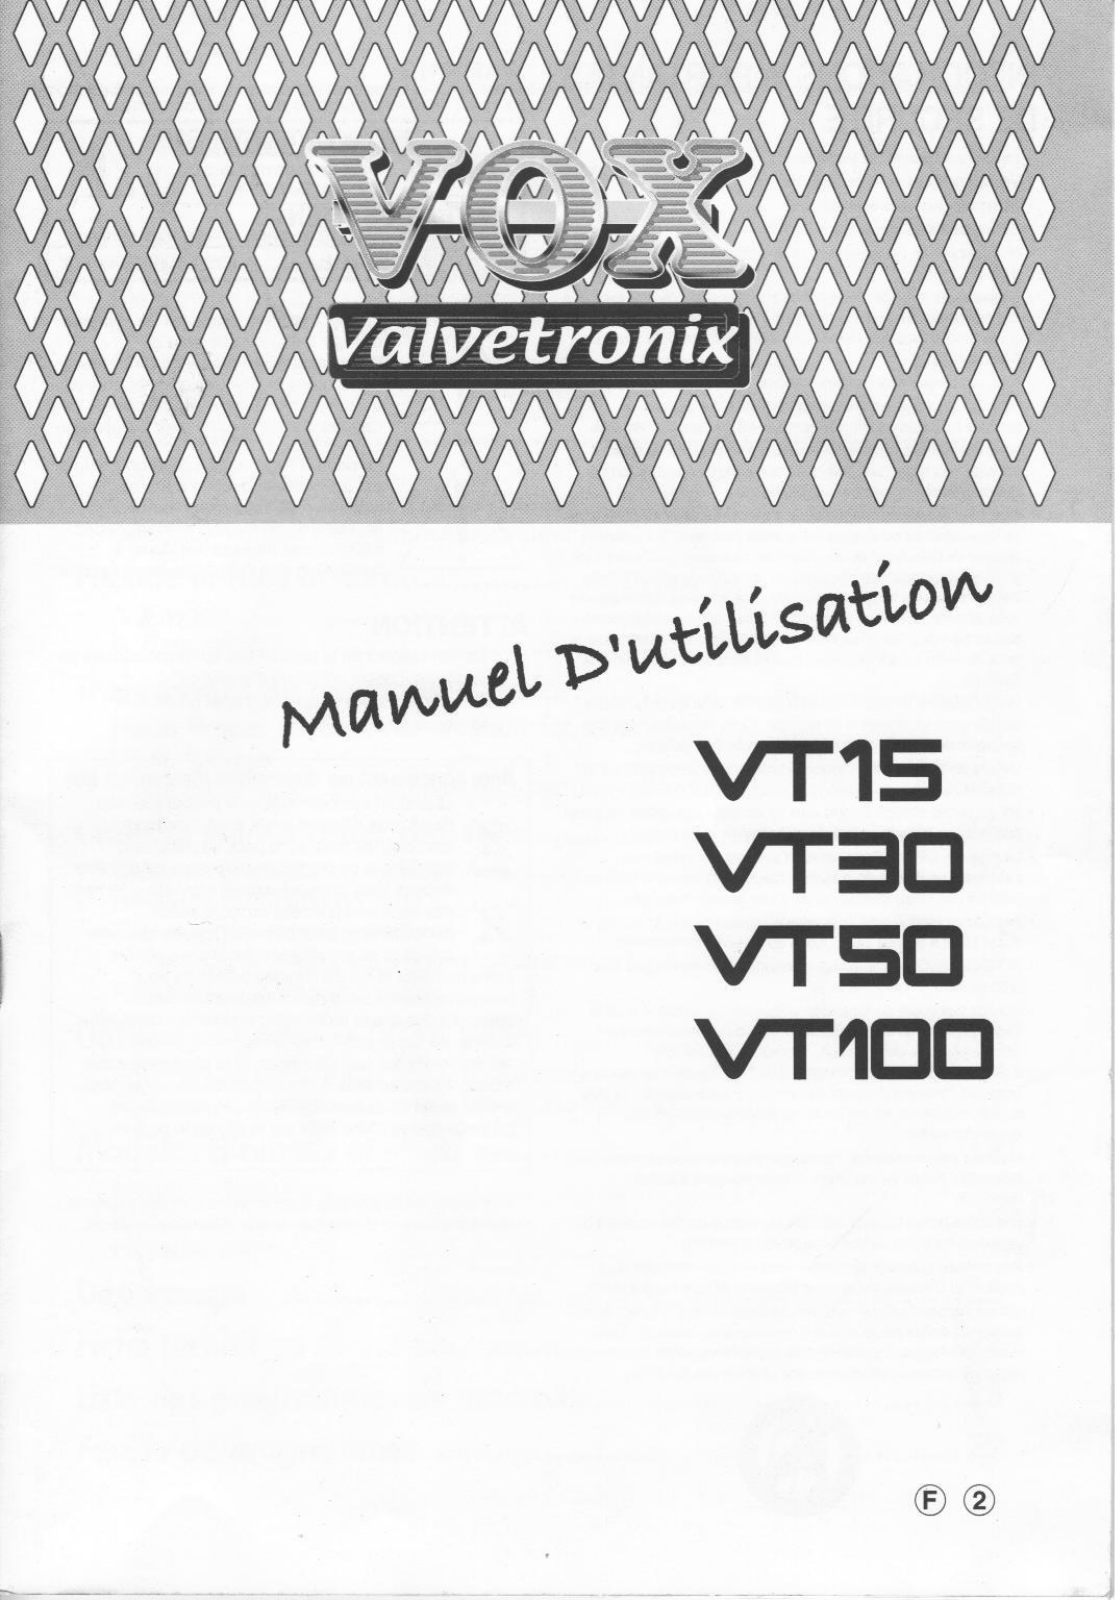 VOX VALVETRONIX VT100, VALVETRONIX VT15, VALVETRONIX VT30, VALVETRONIX VT50 User Manual